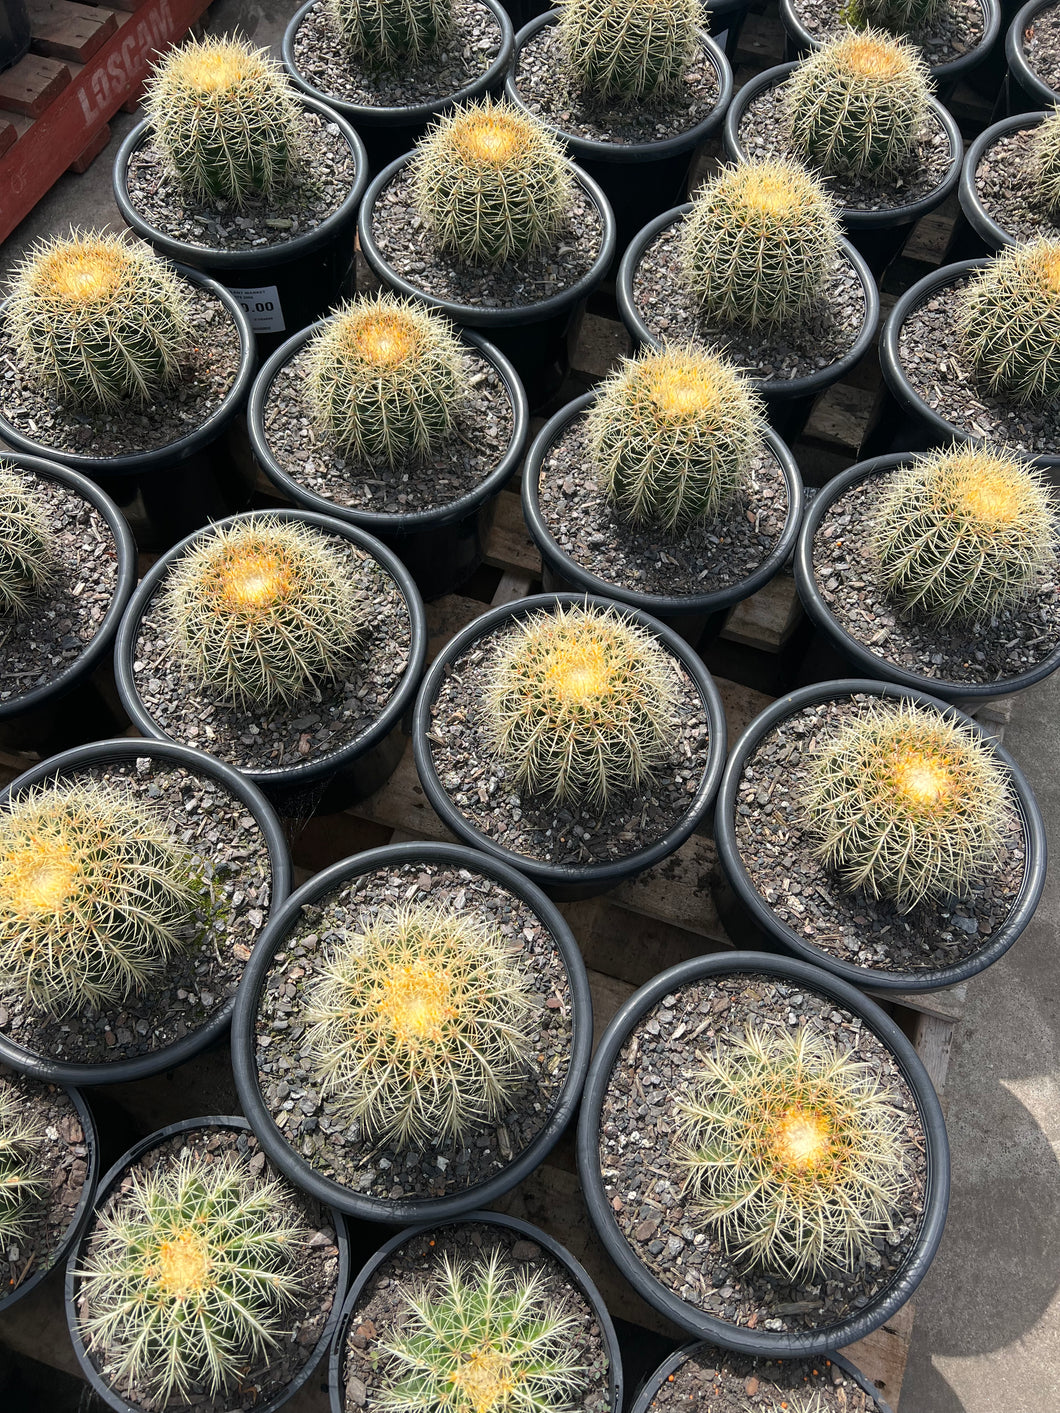 Echinocactus Grusonii (Golden Barrel Cactus)